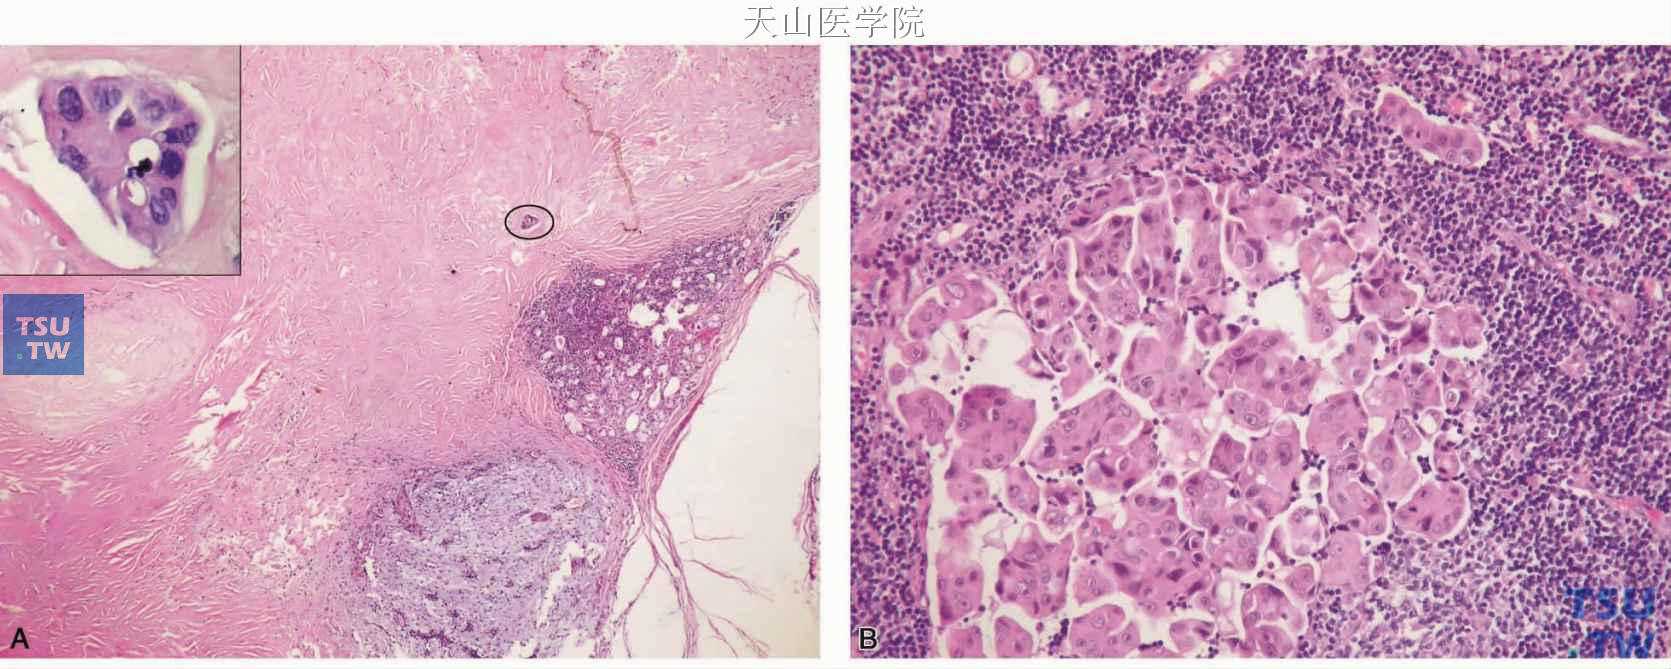 多形性腺瘤原位癌变并发生转移 A.肿瘤的大部分发生玻璃样变，但包膜完整，左上角的插图为椭圆形框内肿瘤细胞的高倍观；B.淋巴结转移成分与原发灶的成分一致